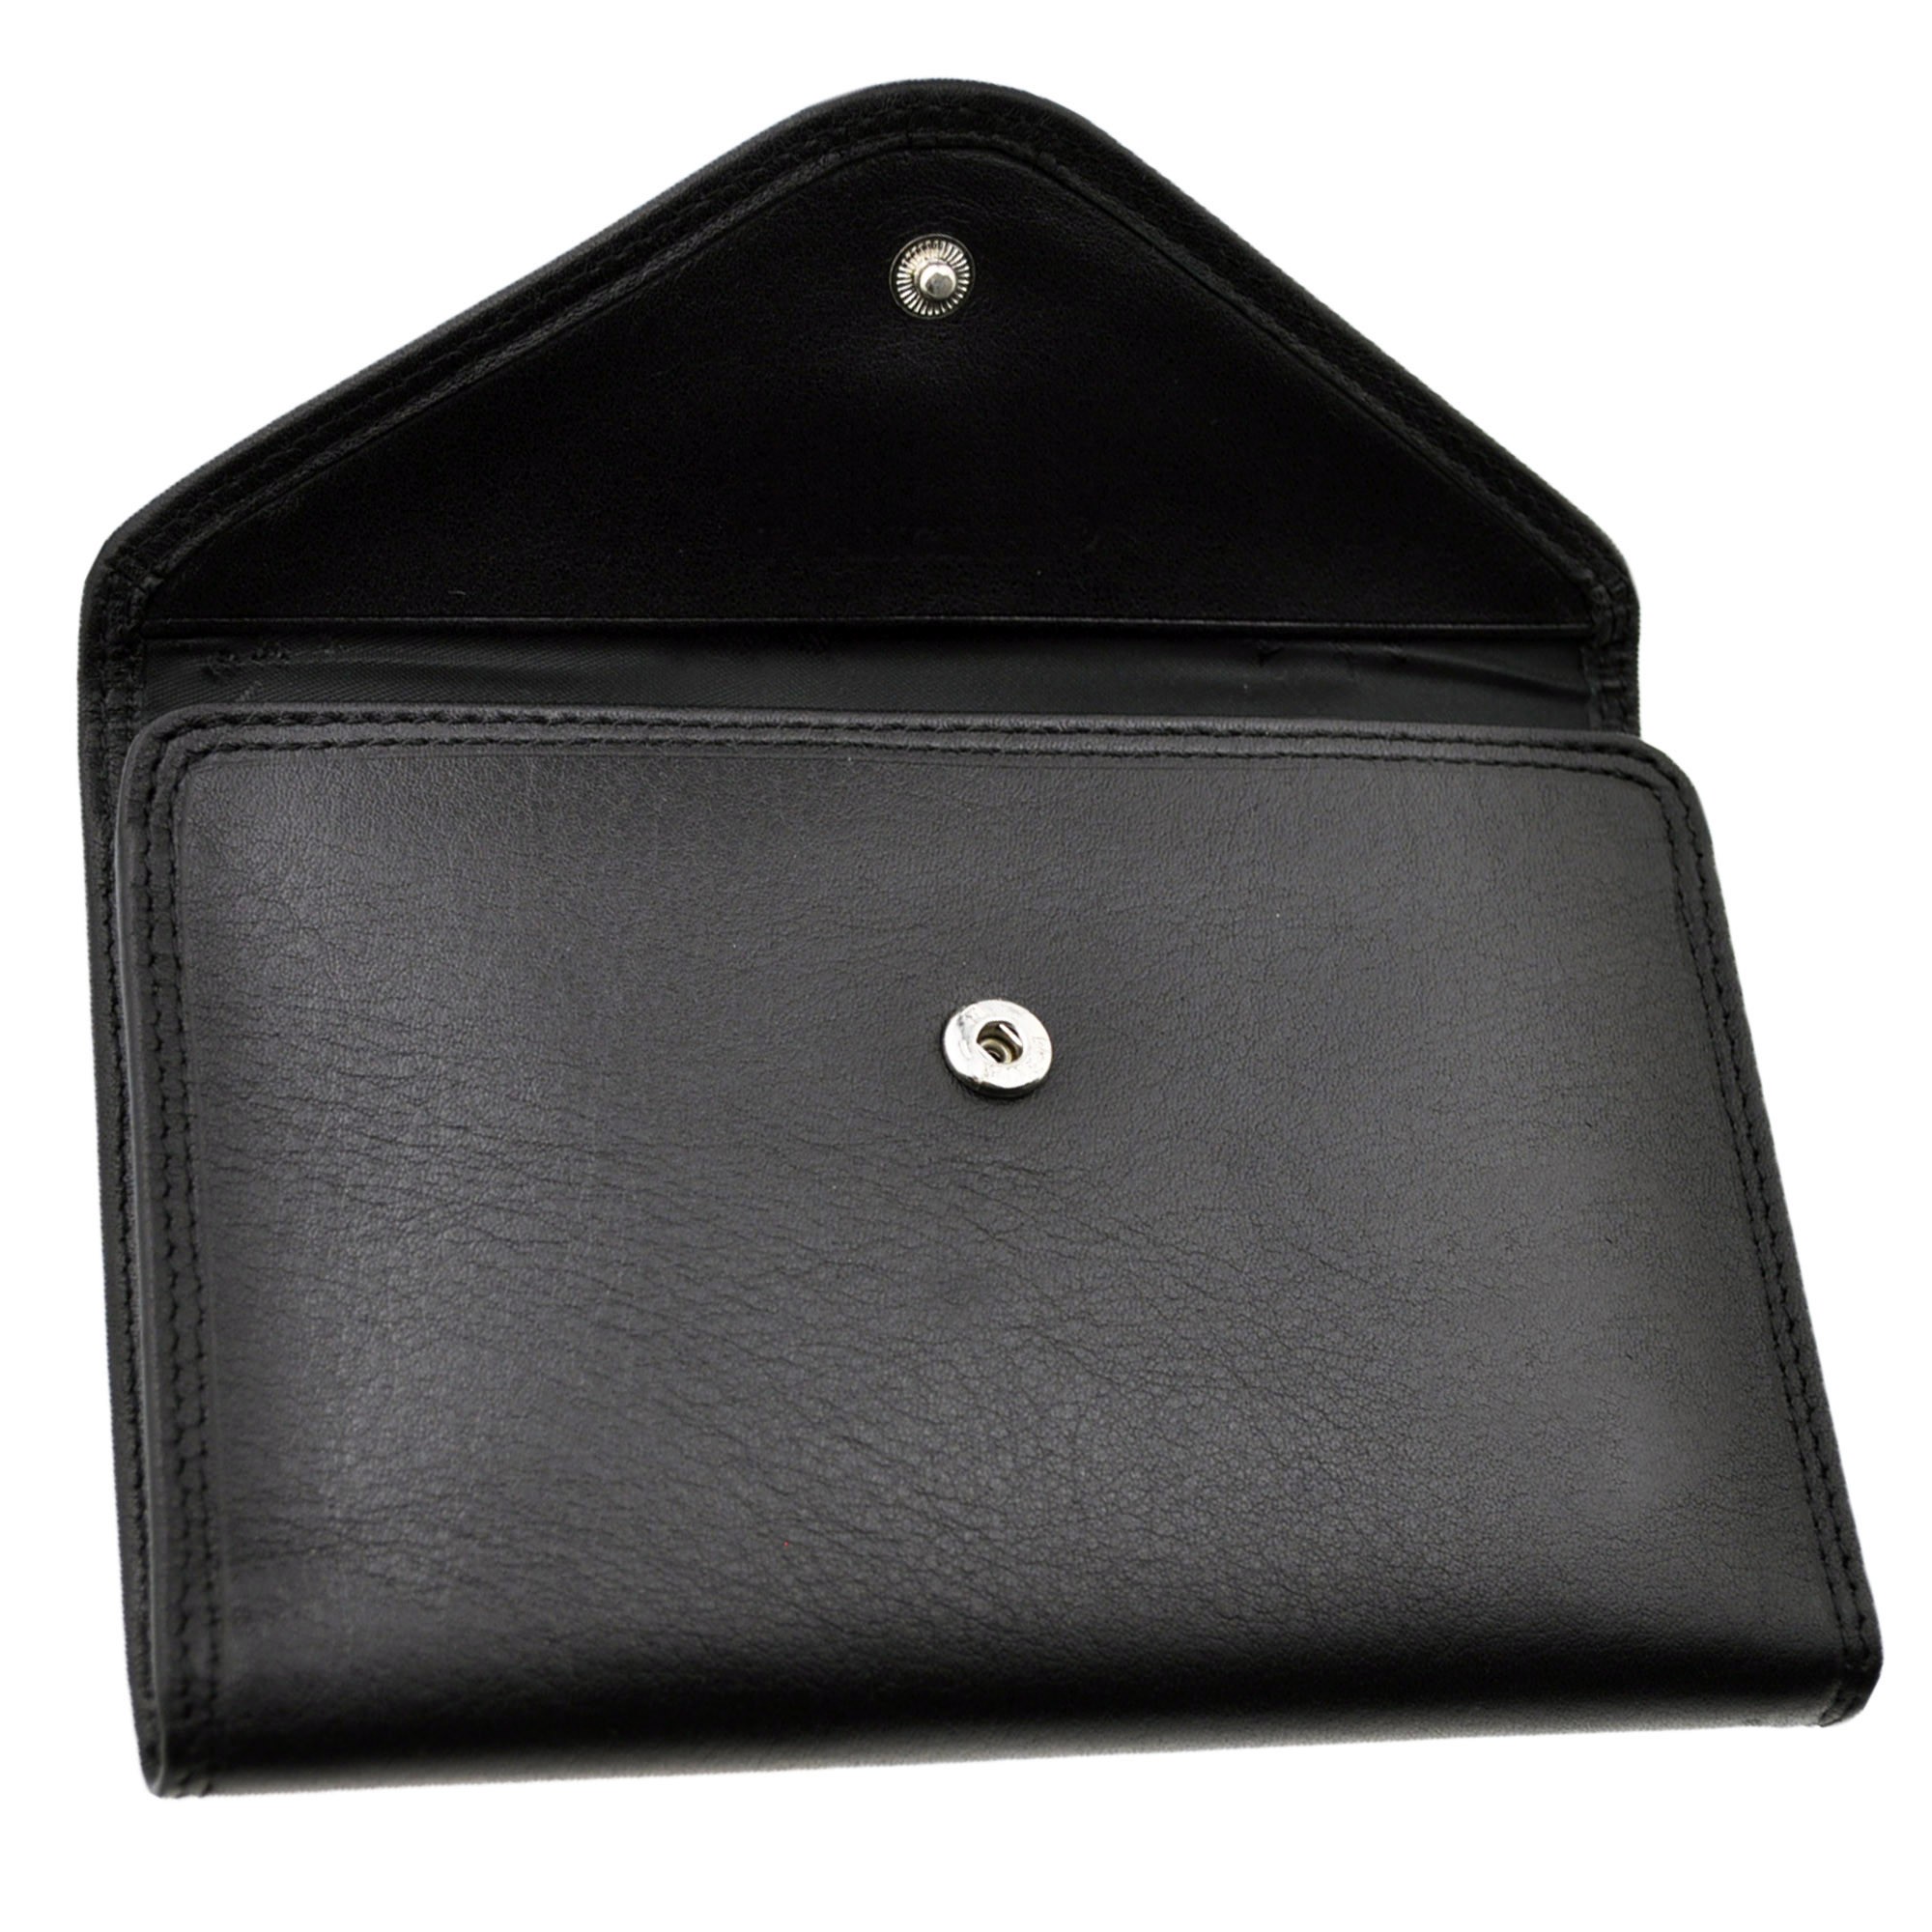 étuis enveloppe portefeuille carte grise permis avec porte clé Charmoni® en  cuir neuf Abitain - Charmoni